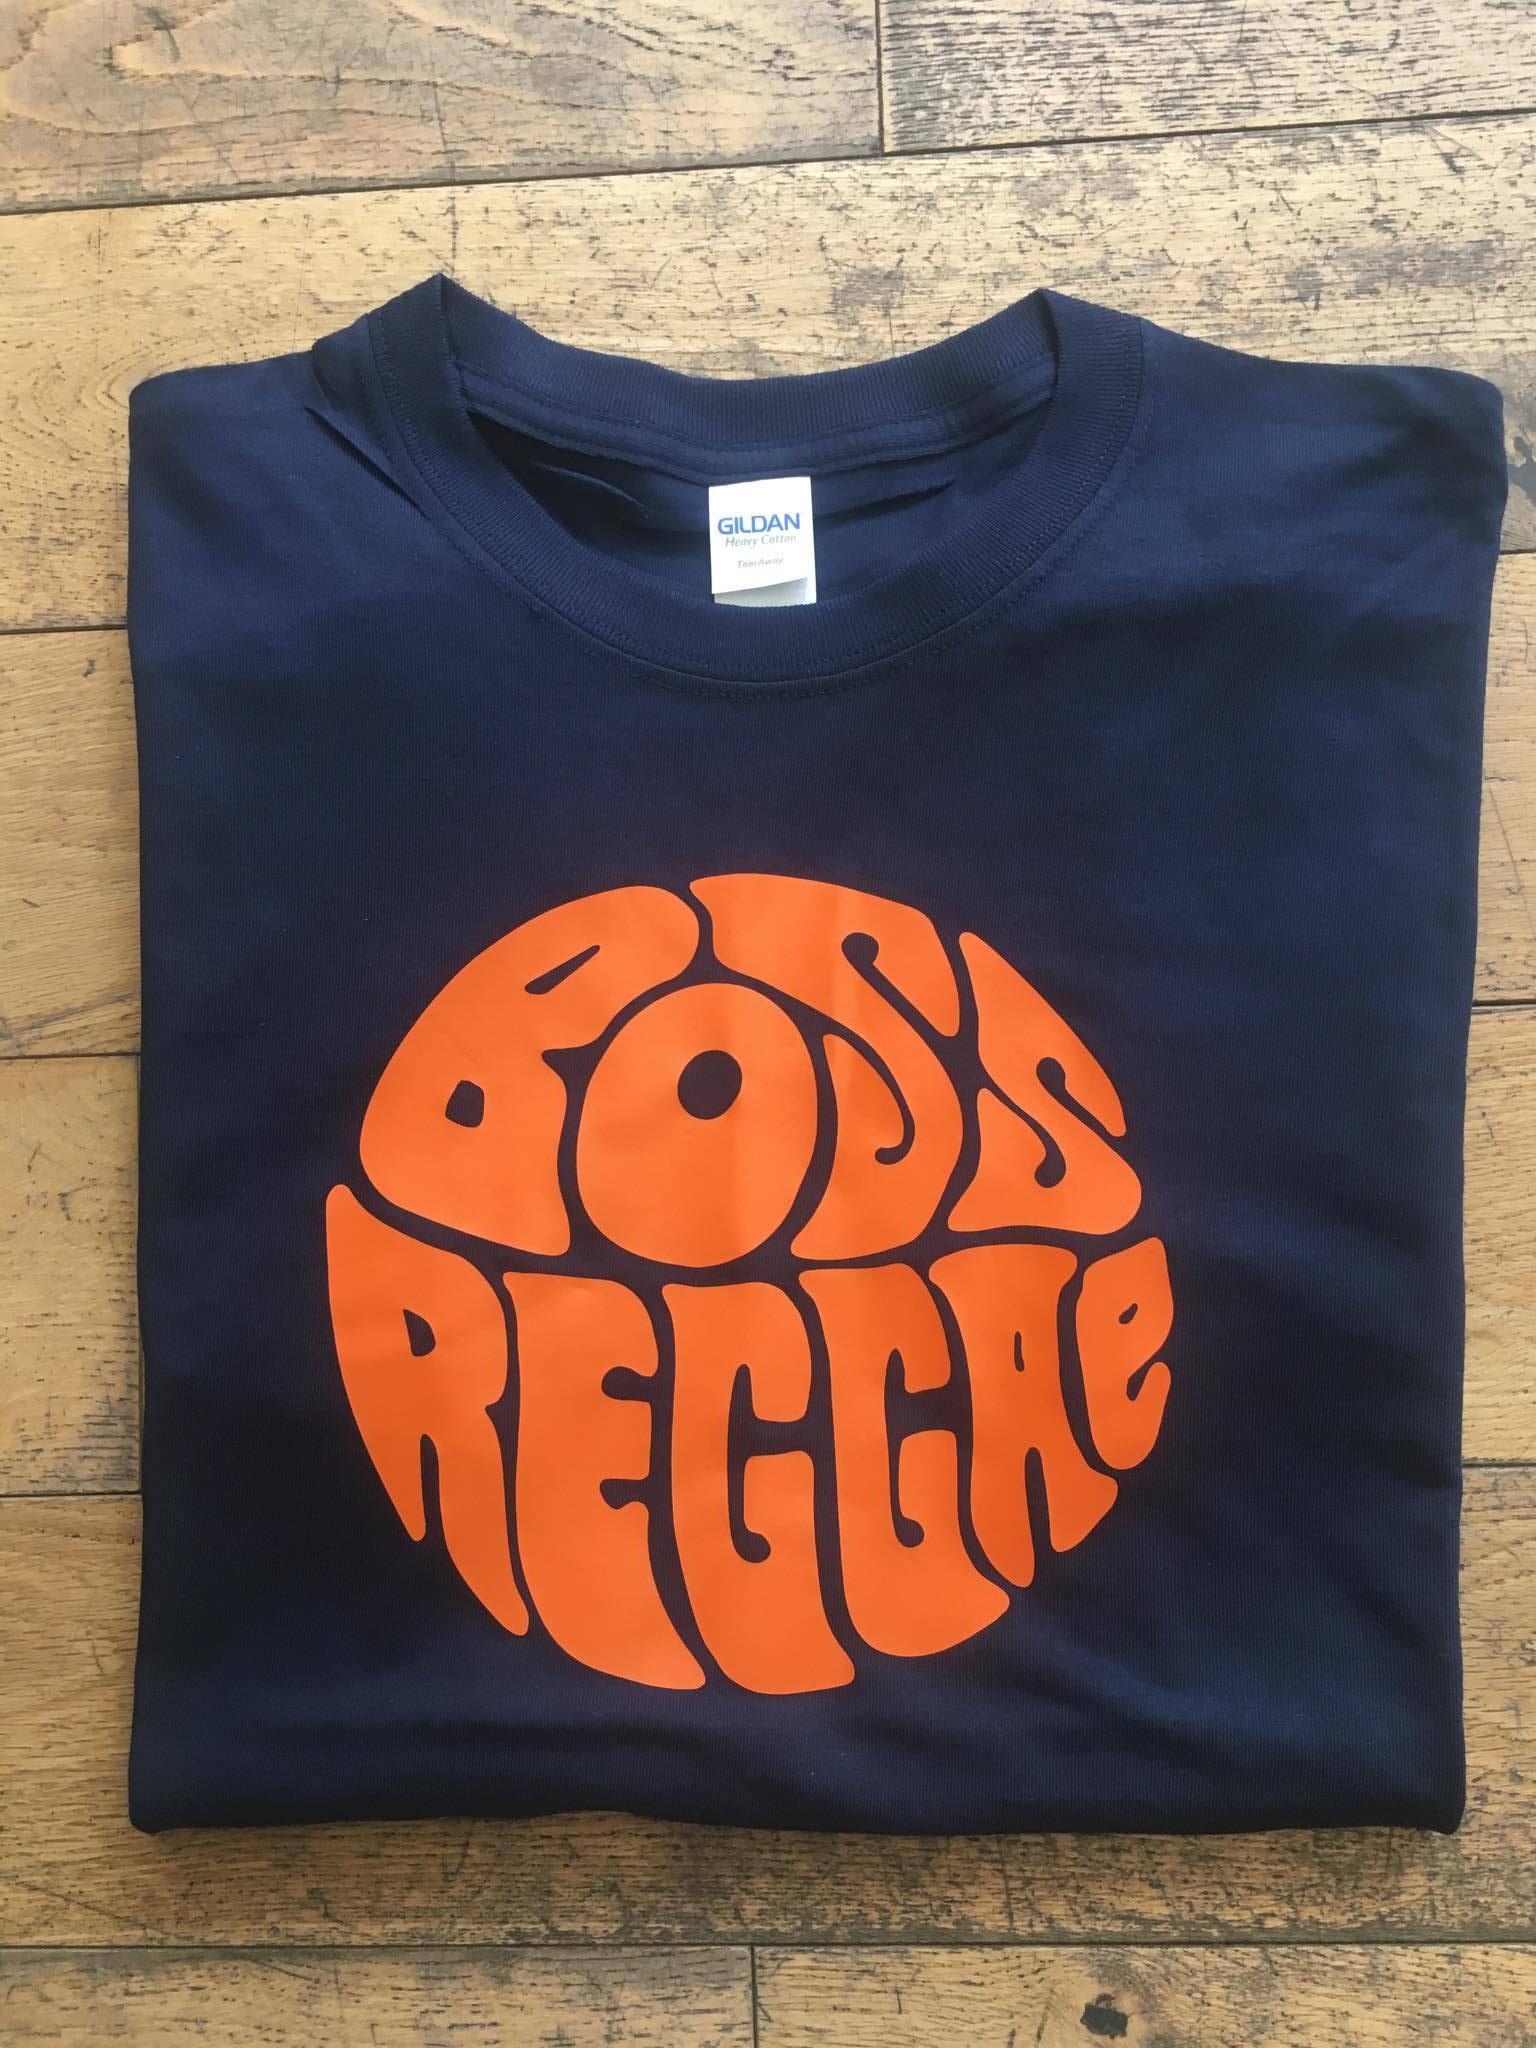 Boss Reggae (Round) T-Shirt Navy & Orange